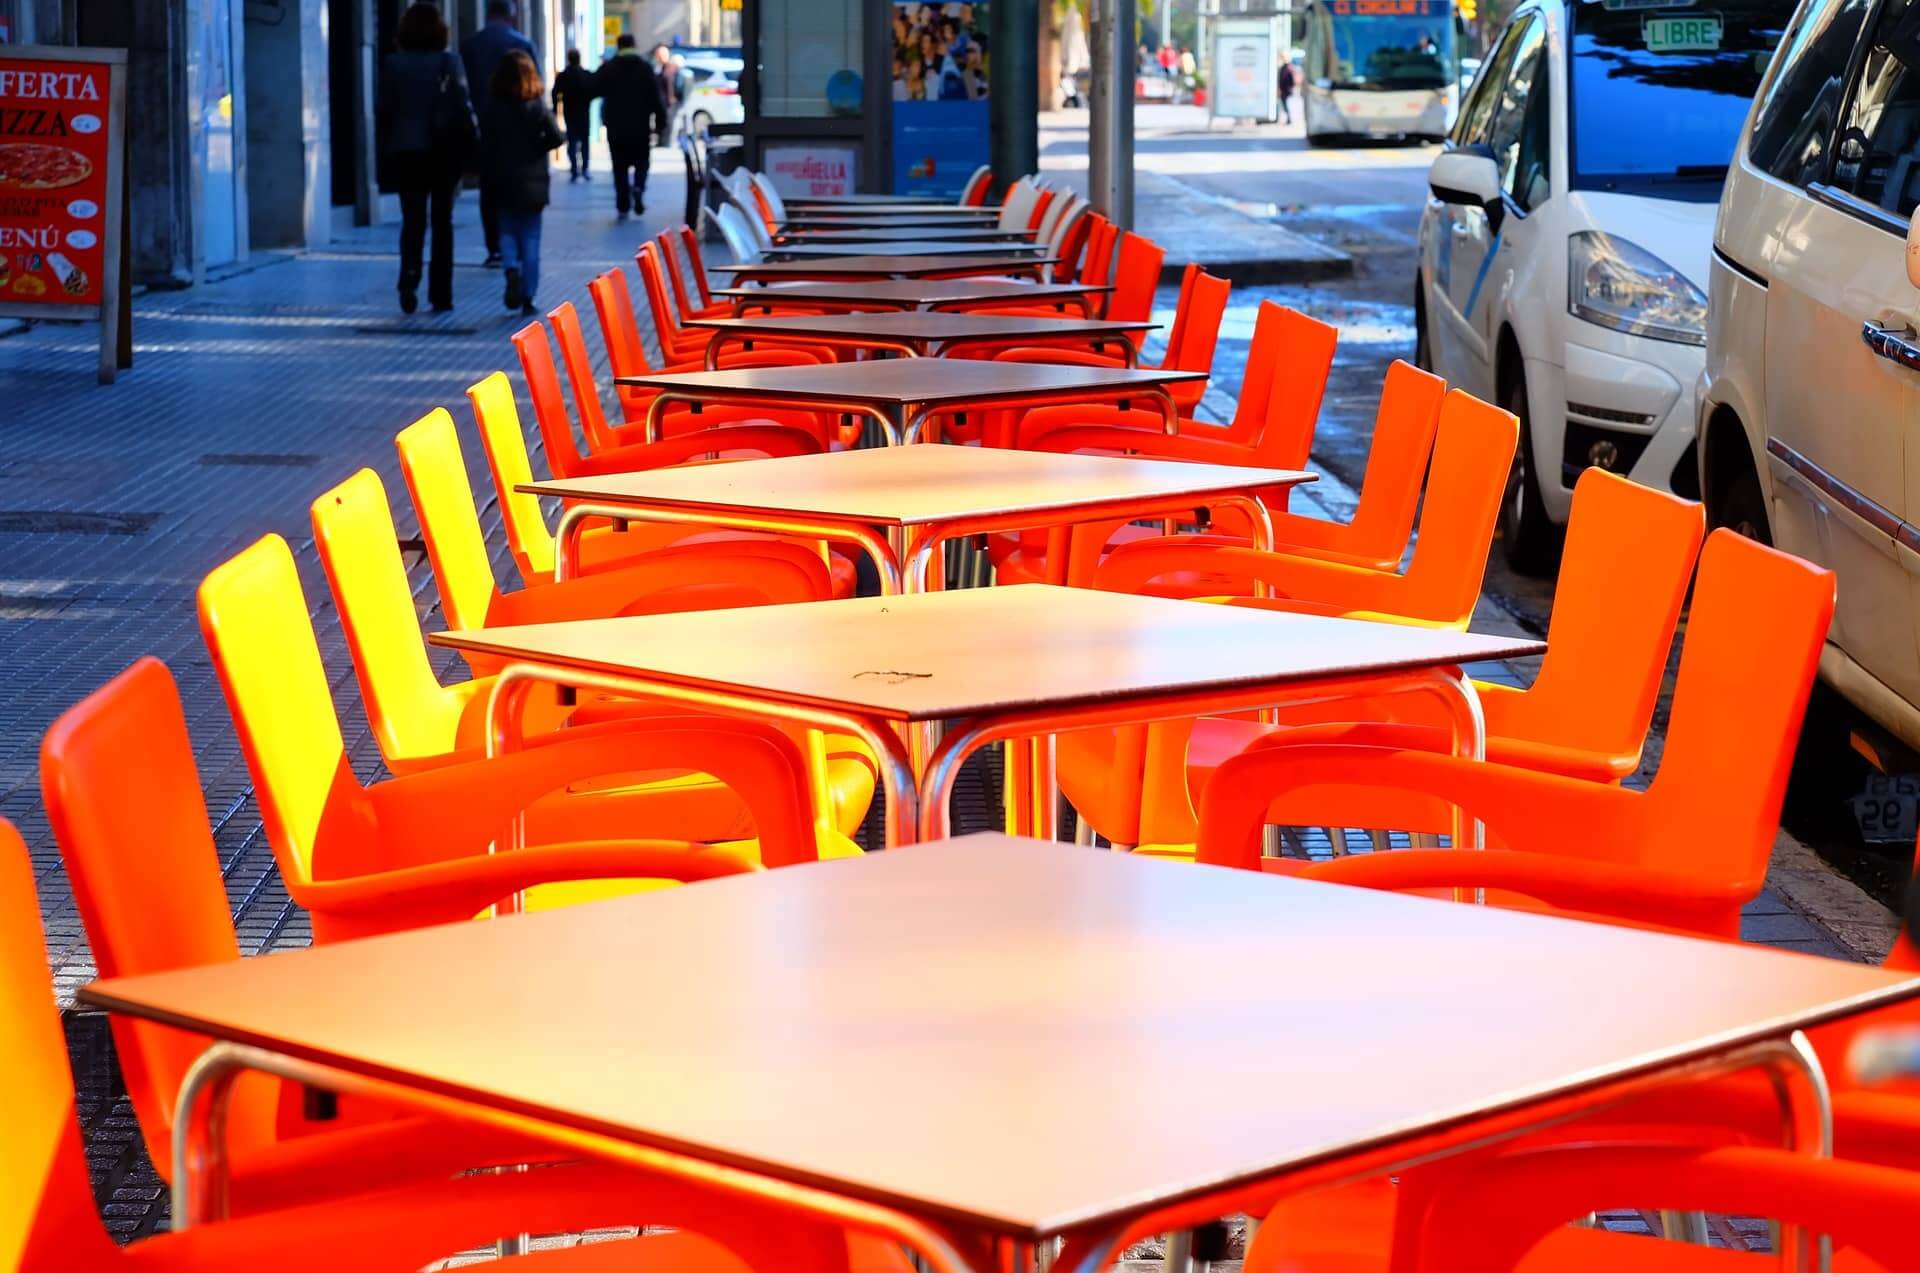 Leere Tische eines Restaurants stehen auf einer Straße